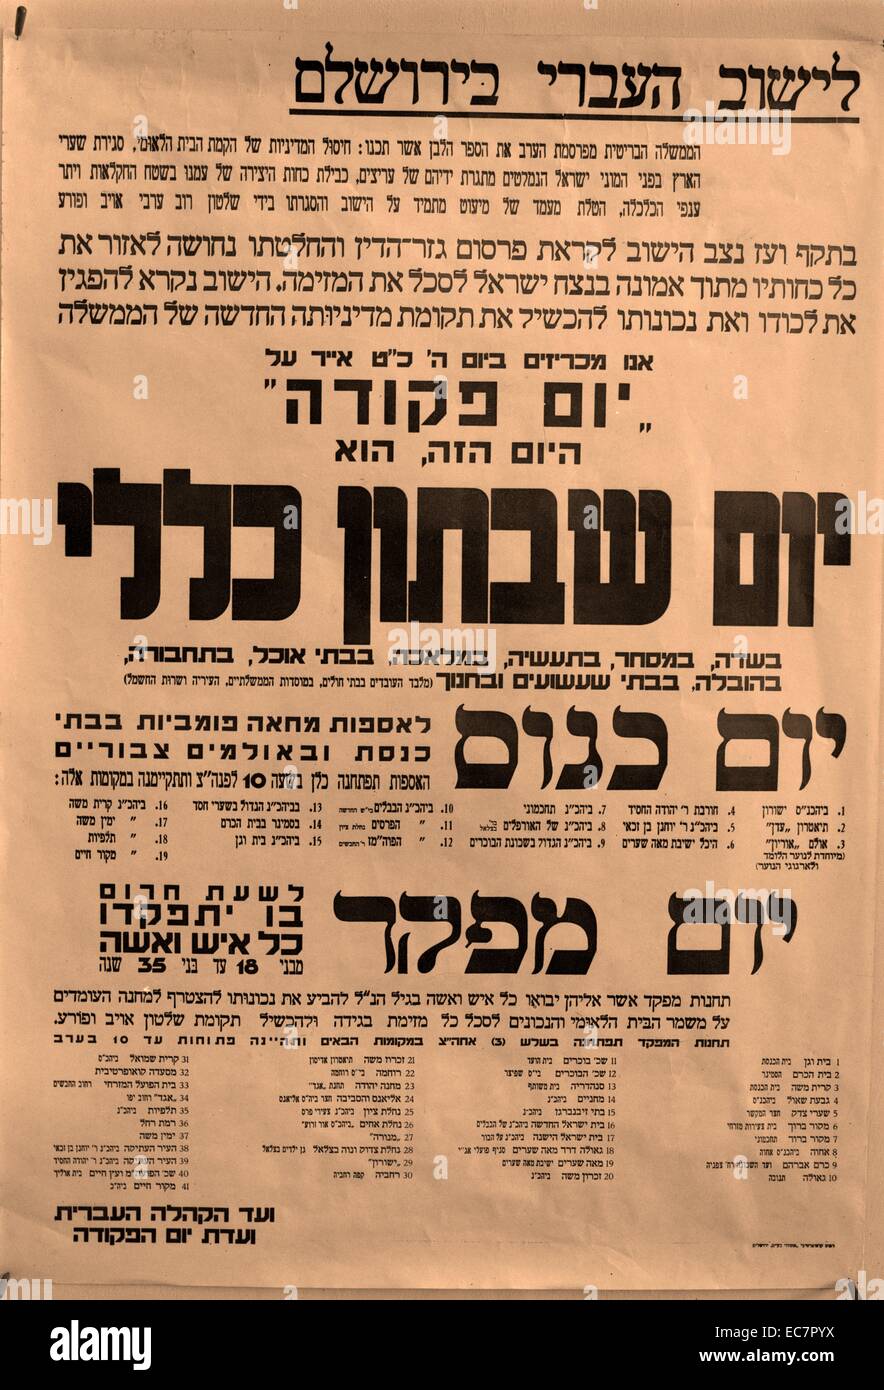 Ebraica dimostrazioni di protesta contro la Palestina carta bianca. Uno dei big poster visualizzati giorno precedente Foto Stock